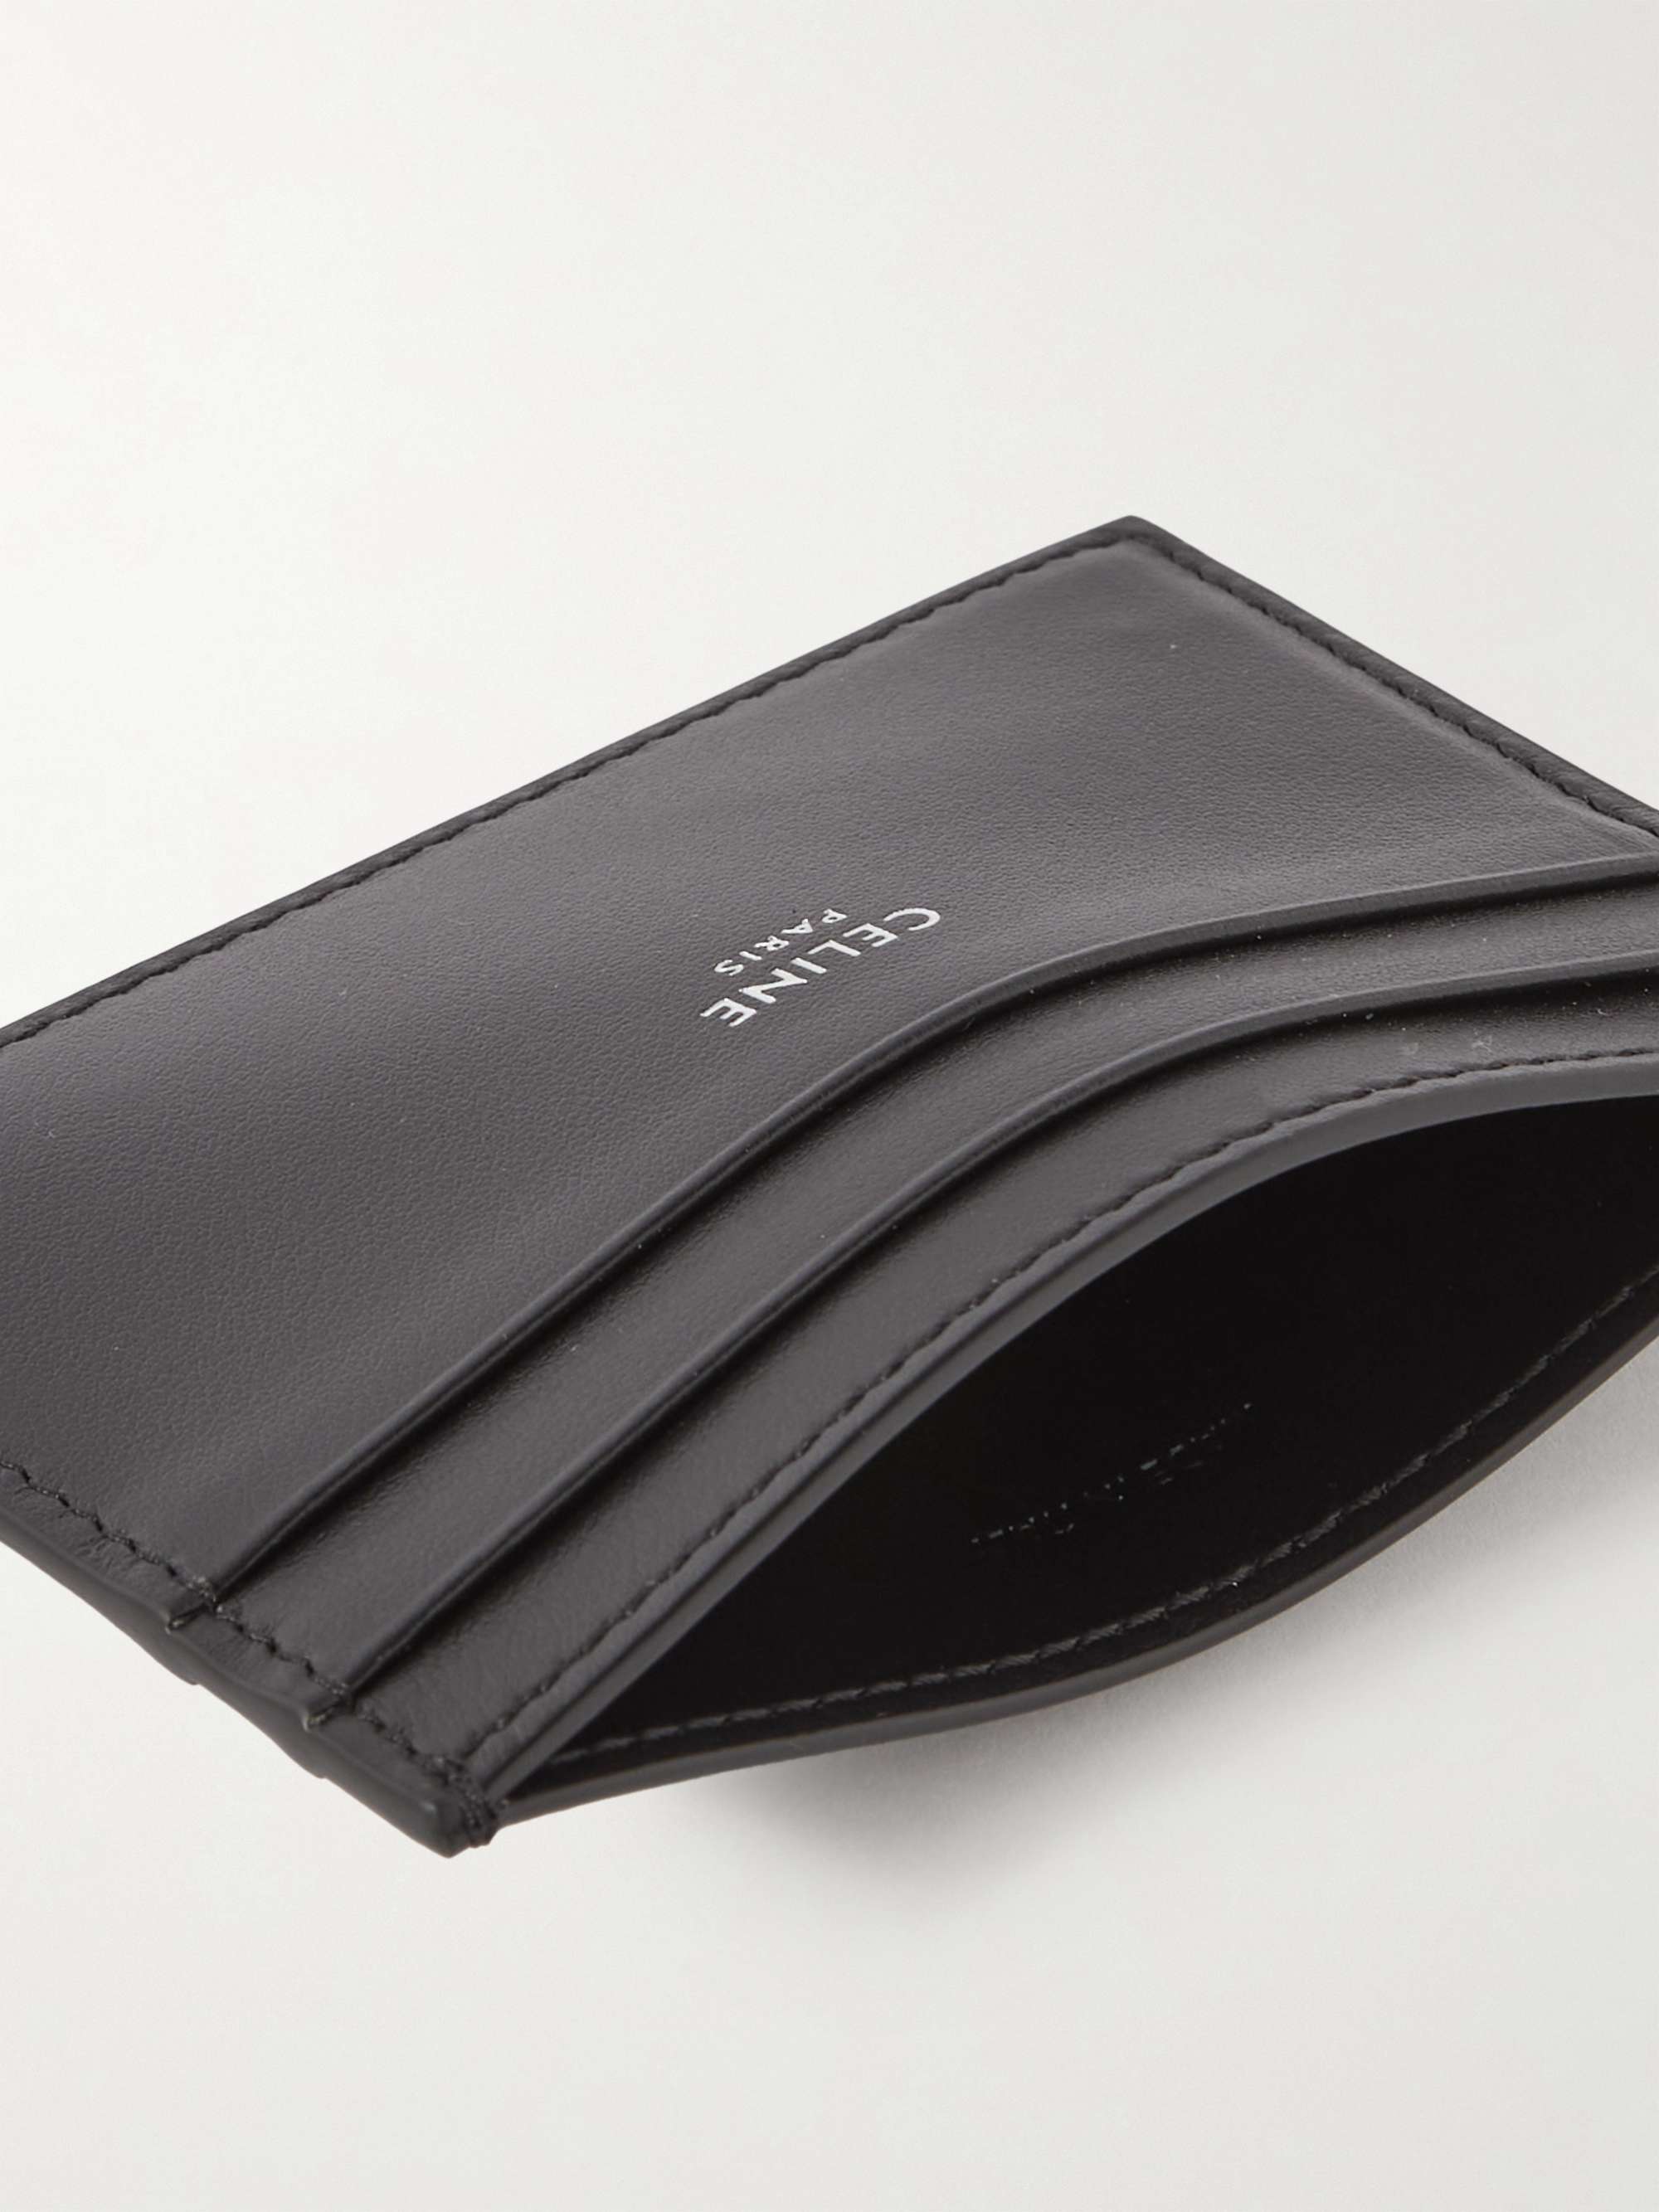 Celine Homme Triomphe Leather-trimmed Coated-canvas Cardholder - Men - Black Wallets